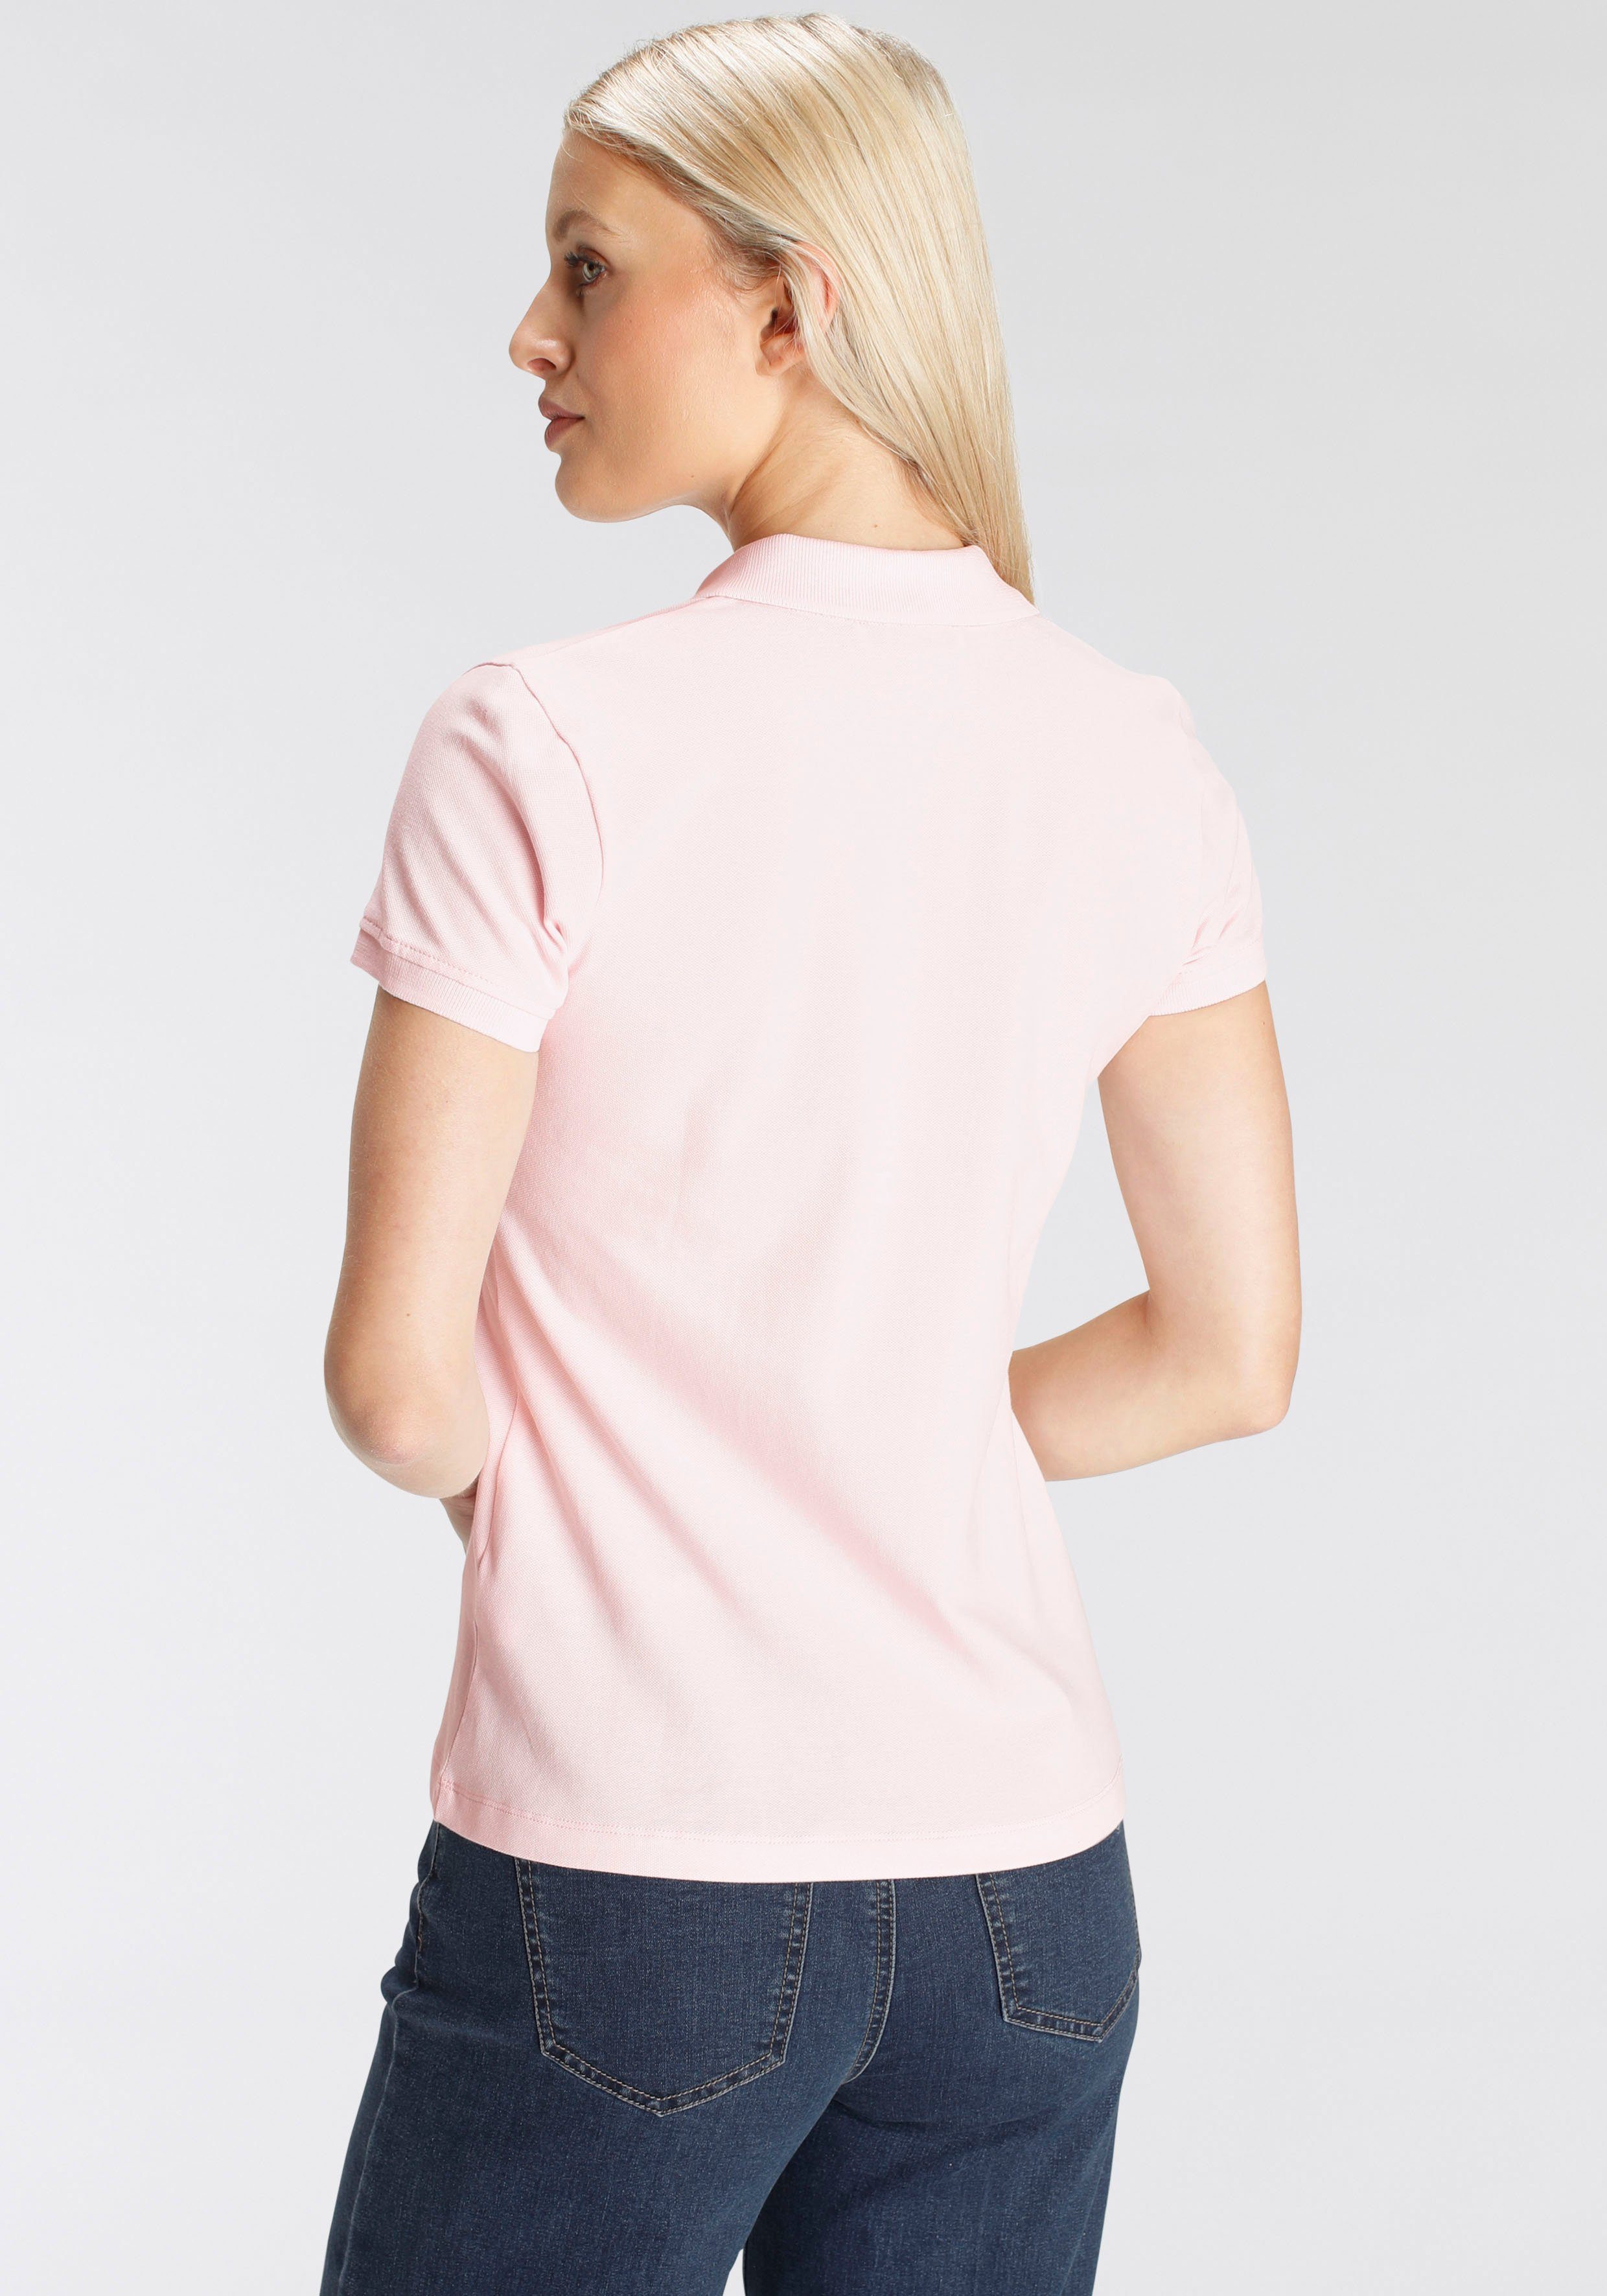 DELMAO Poloshirt in klassischer MARKE! rosa NEUE verschiedenen Farben in - Form